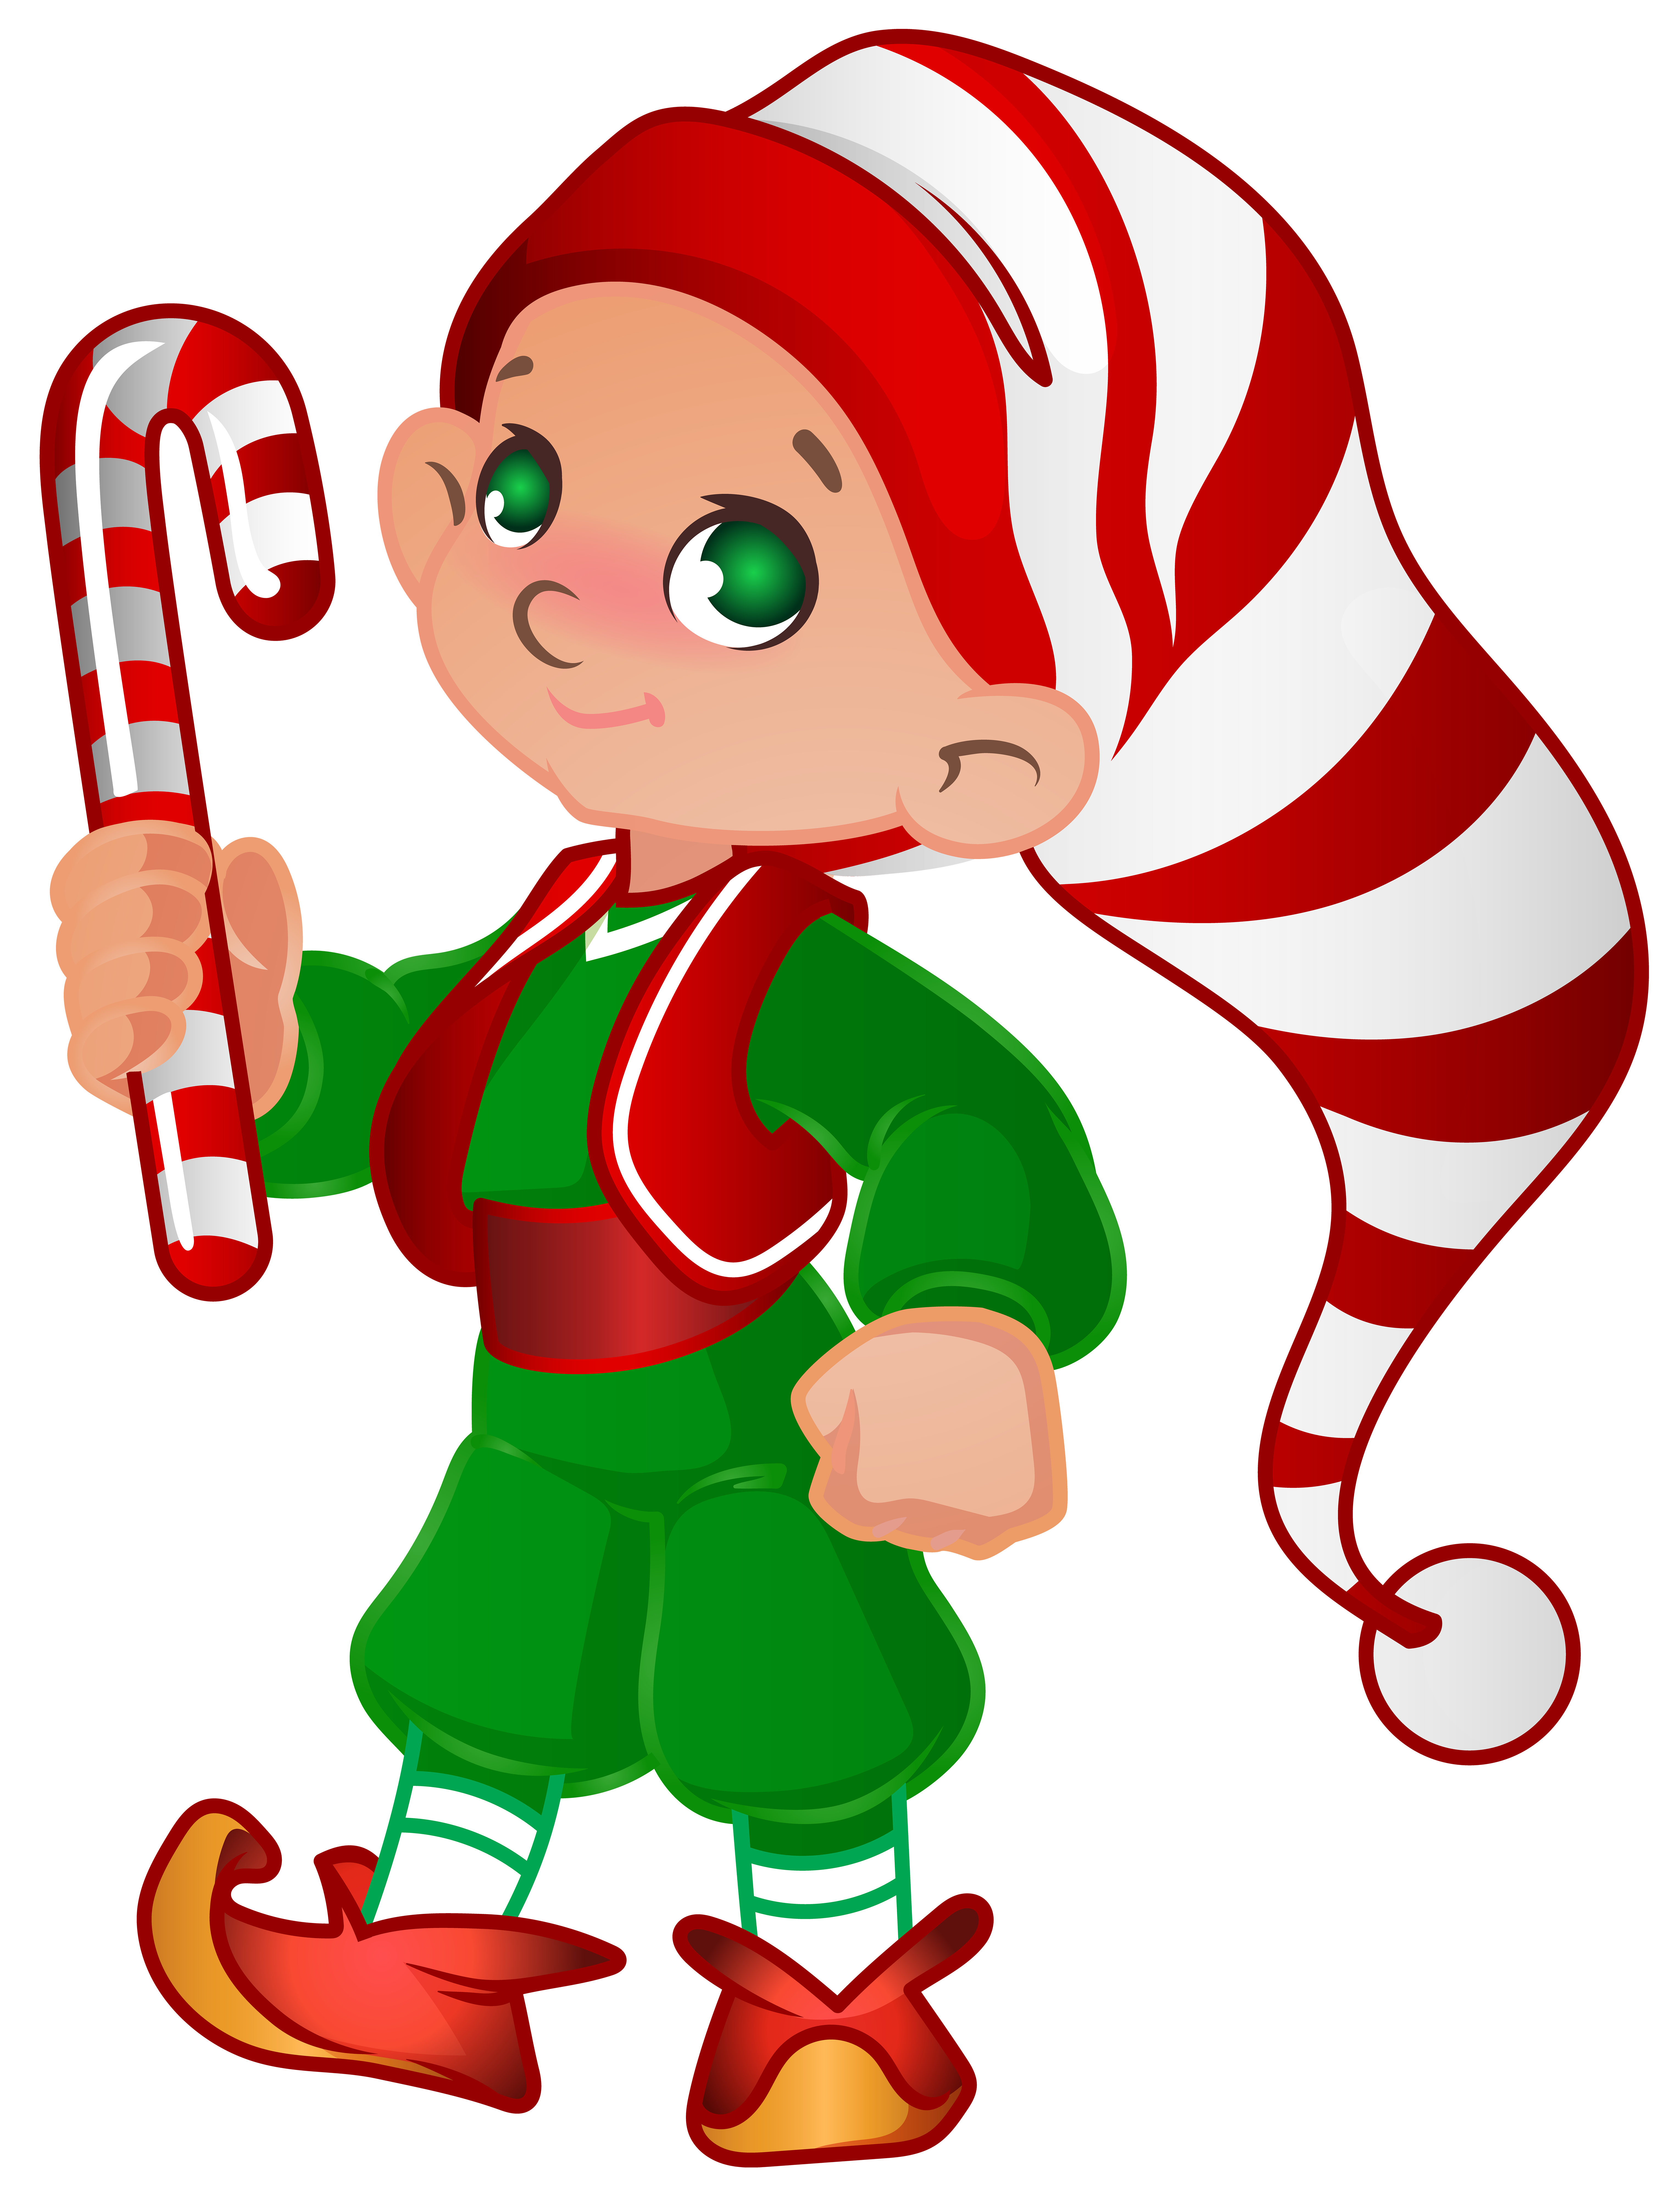 Elf Santa Helper Transparent PNG Clip Art Image.